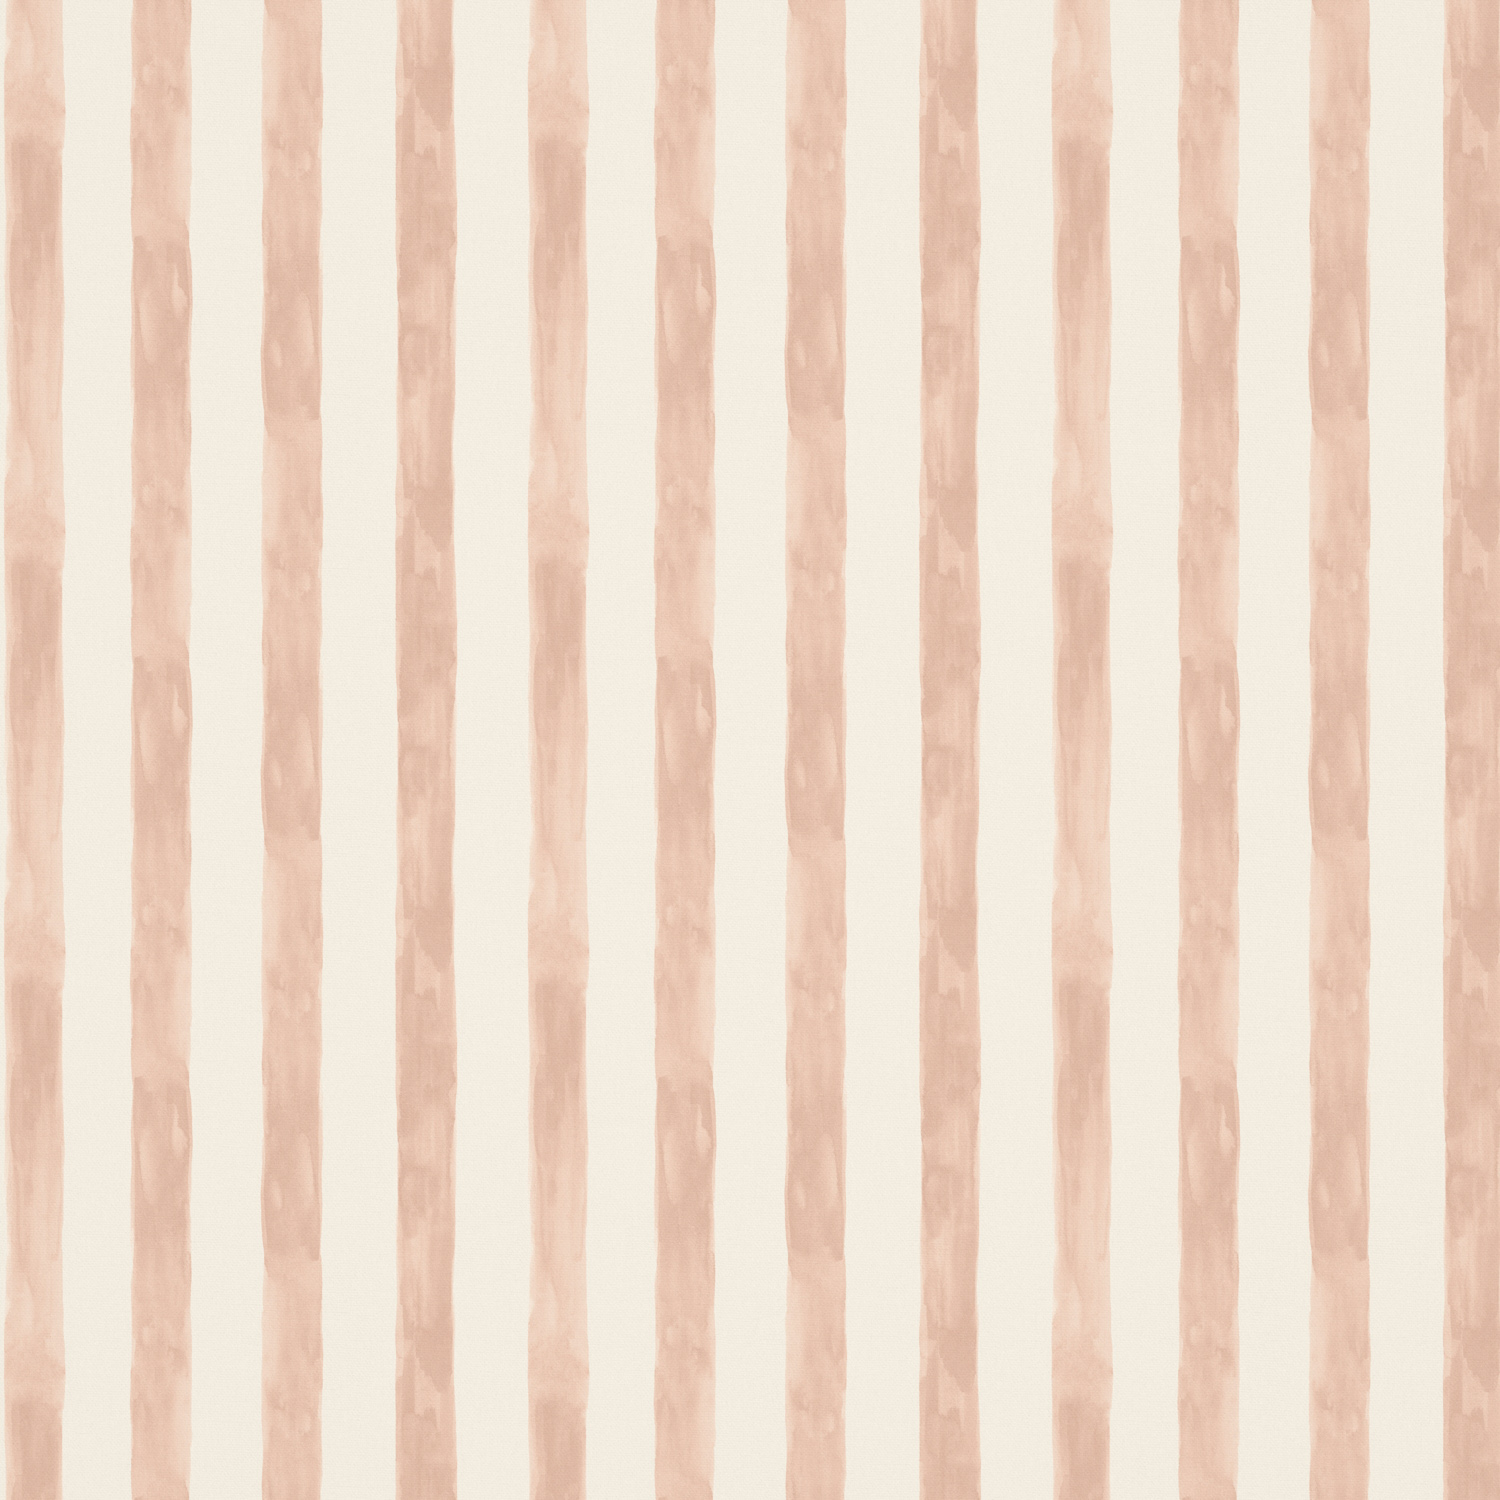 Stripe / Check Fabric